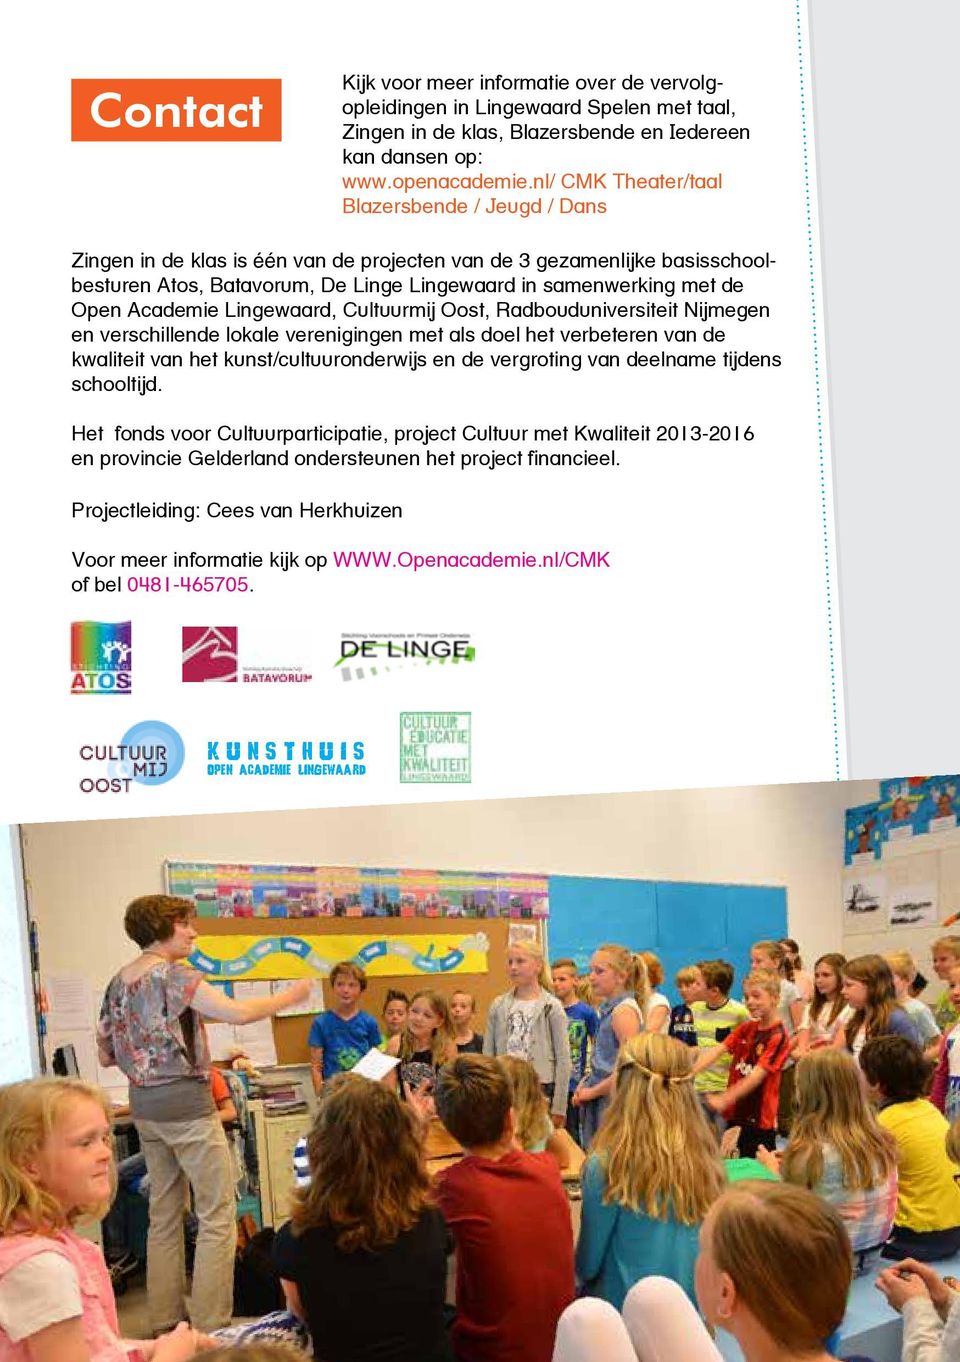 Academie Lingewaard, Cultuurmij Oost, Radbouduniversiteit Nijmegen en verschillende lokale verenigingen met als doel het verbeteren van de kwaliteit van het kunst/cultuuronderwijs en de vergroting